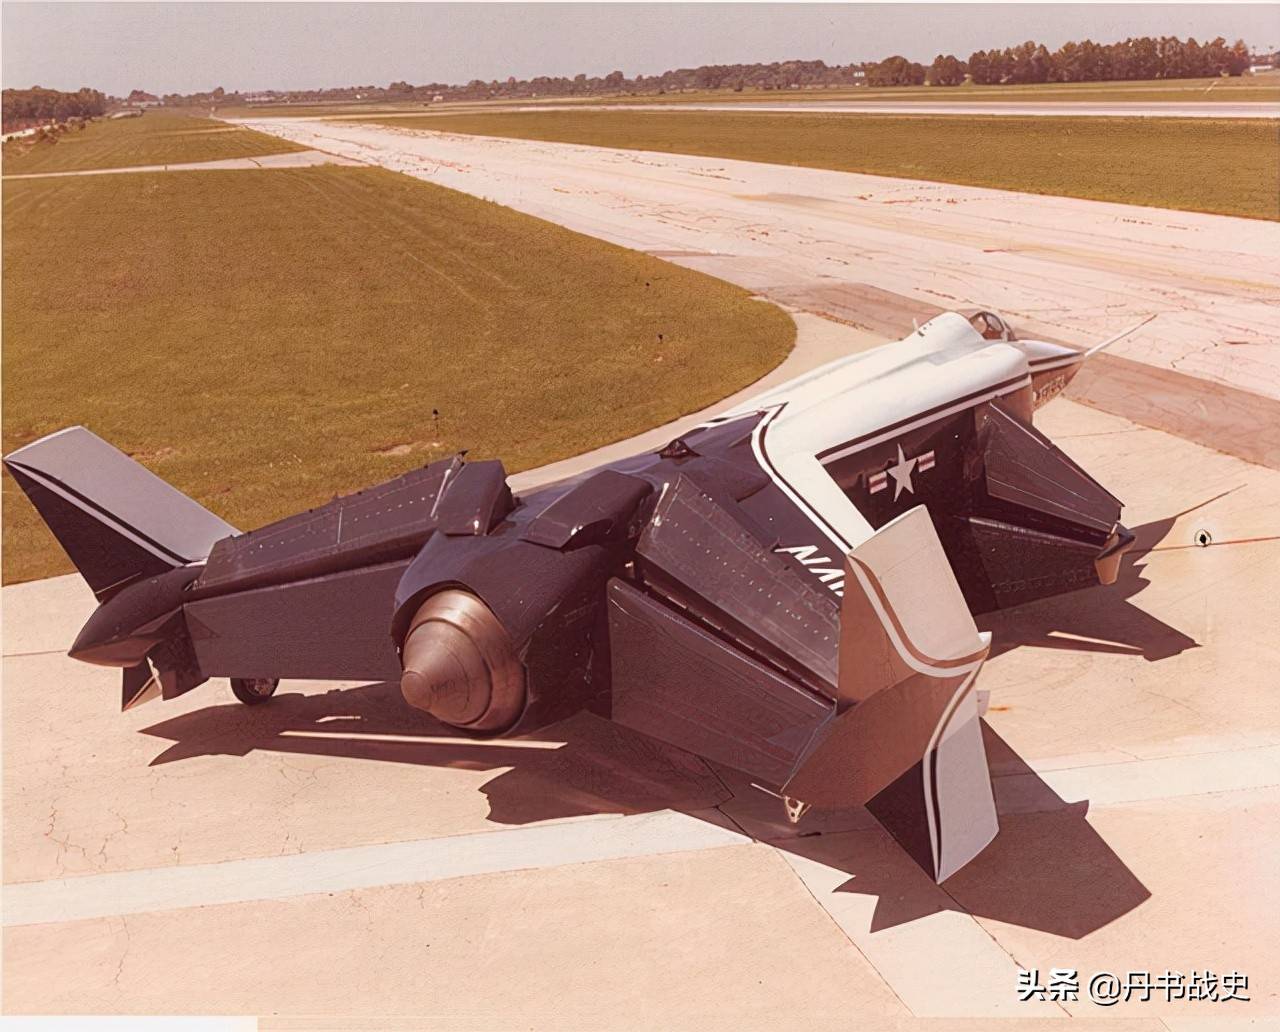 年完成全尺寸风洞模型,1977年开始地面测试,对于一款新飞机而言有点快